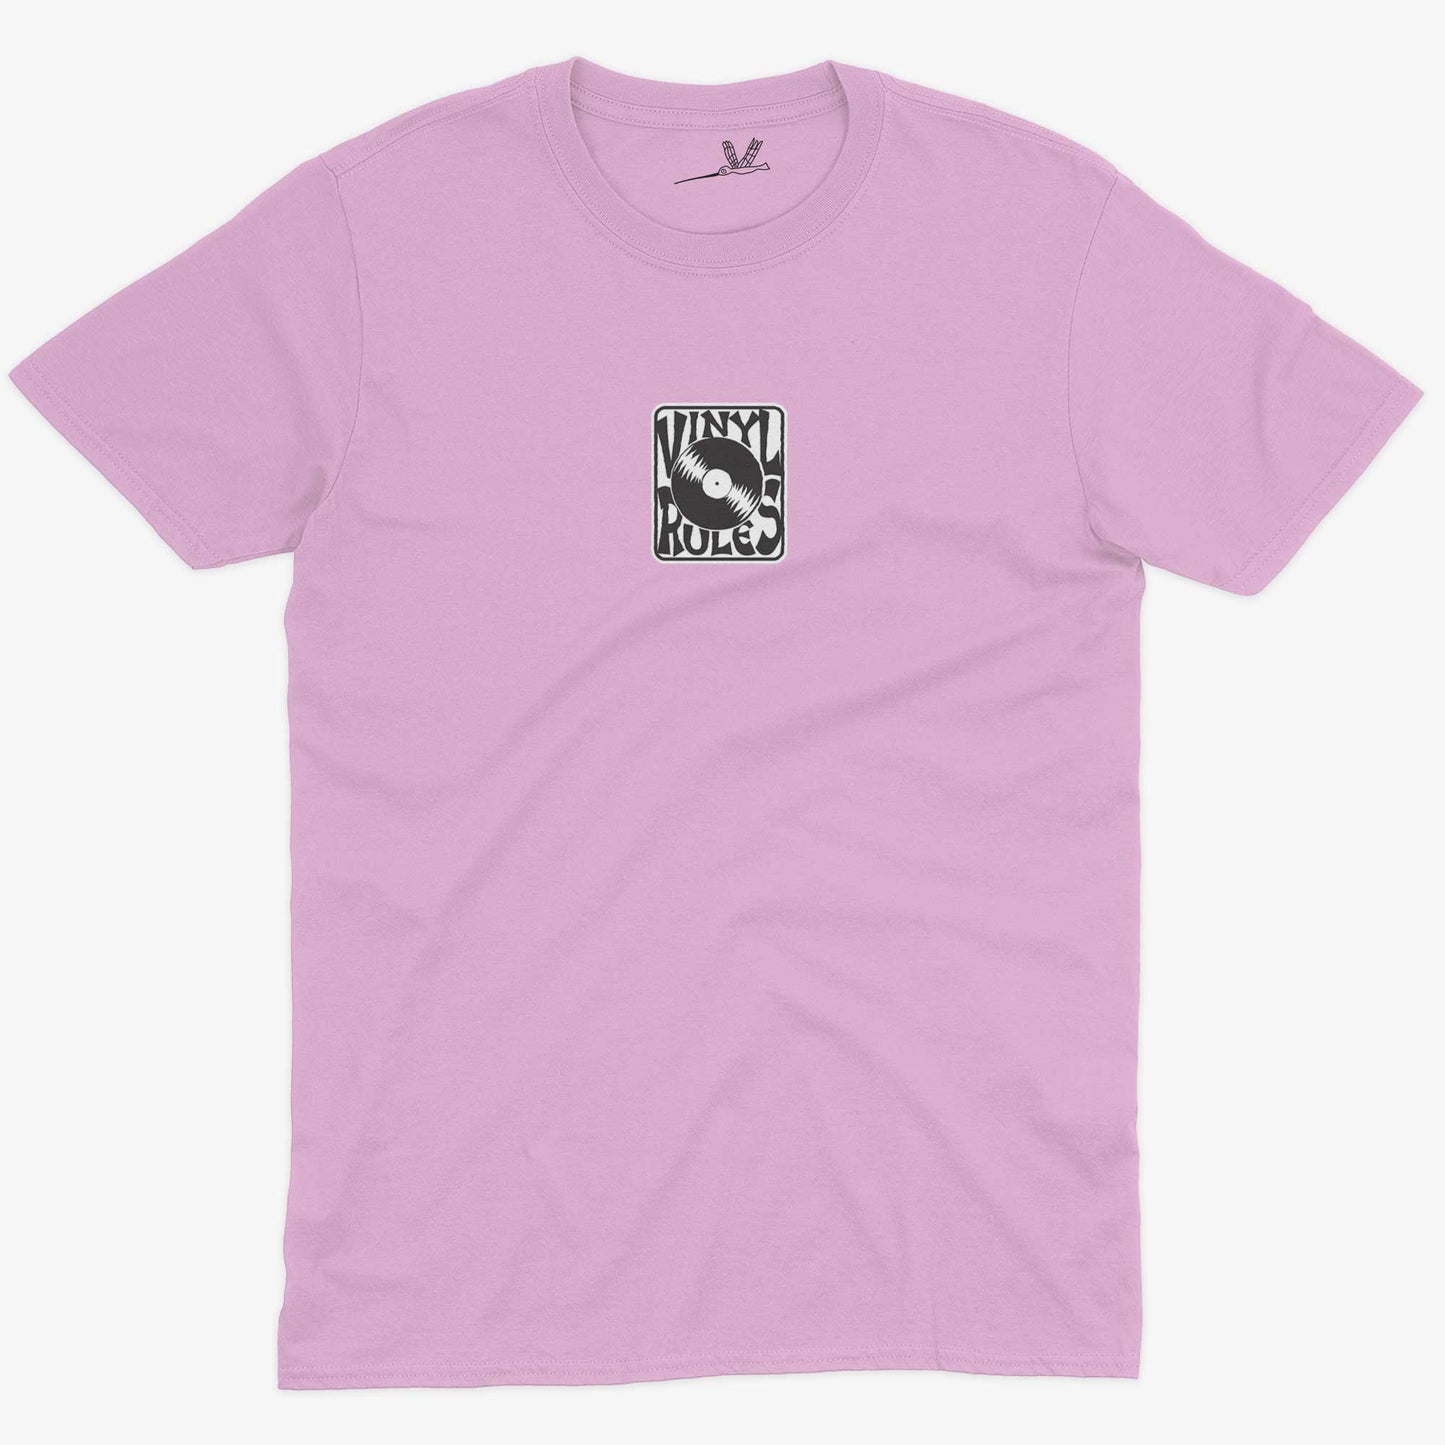 Vinyl Rules Unisex Or Women's Cotton T-shirt-Pink-Unisex